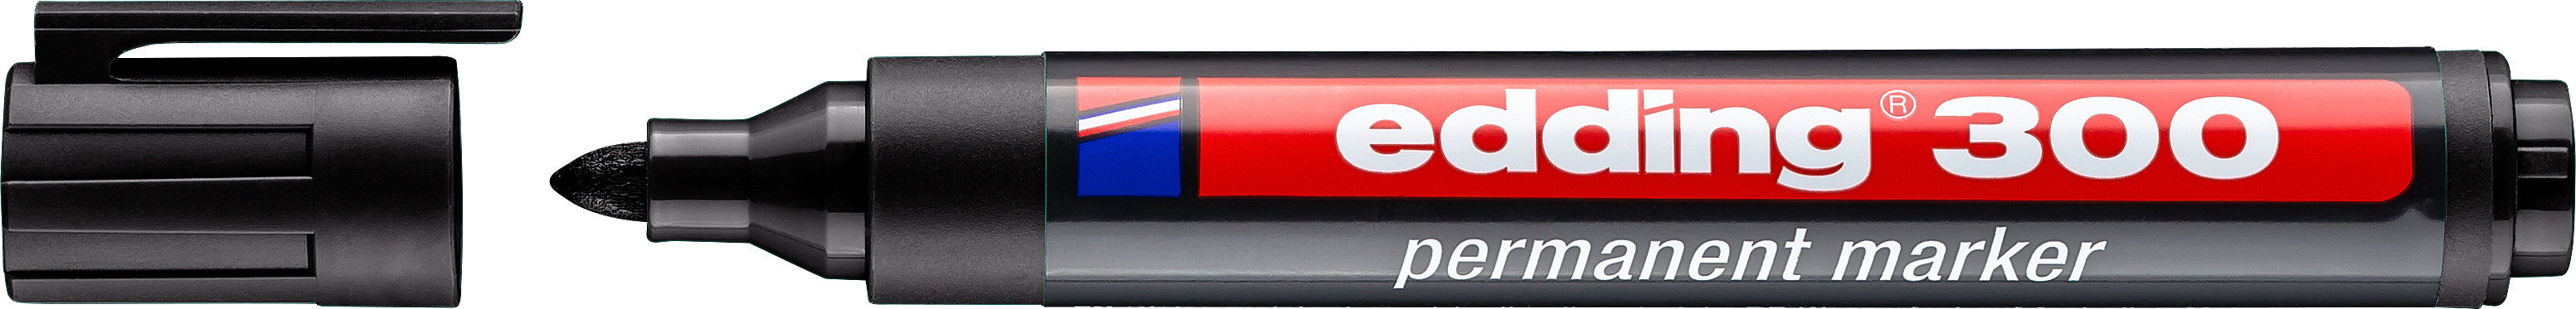 EDDING Permanent Marker 300 1,5-3mm 300-1 schwarz